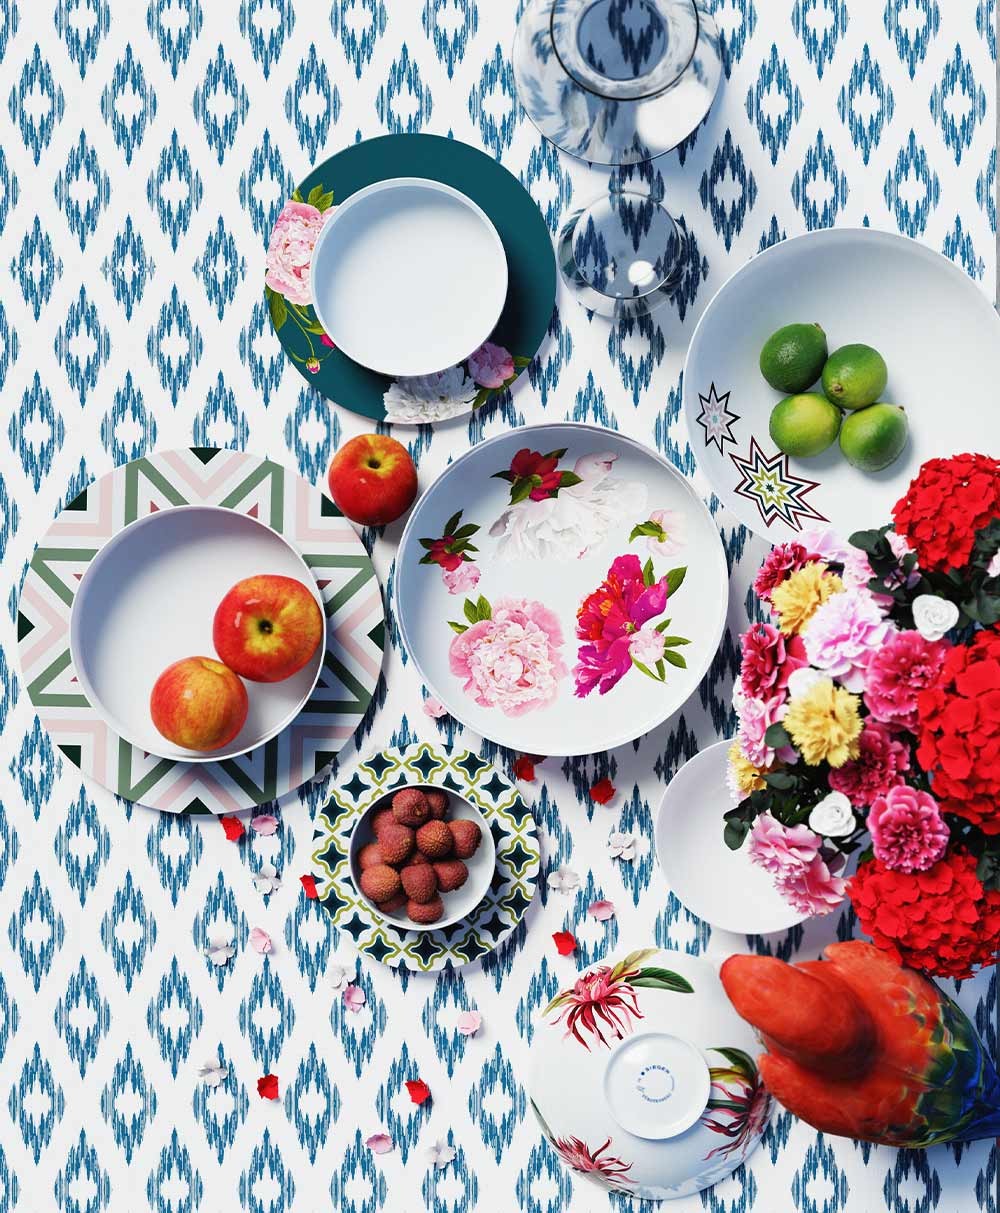 Moodbild, das einige Teller und Schalen der Paraiso-Serie von Sieger by Fürstenberg zeigt, die dekorativ mit Blumen und Obst auf einer blau. gemusterten Unterlage arrangiert wurden